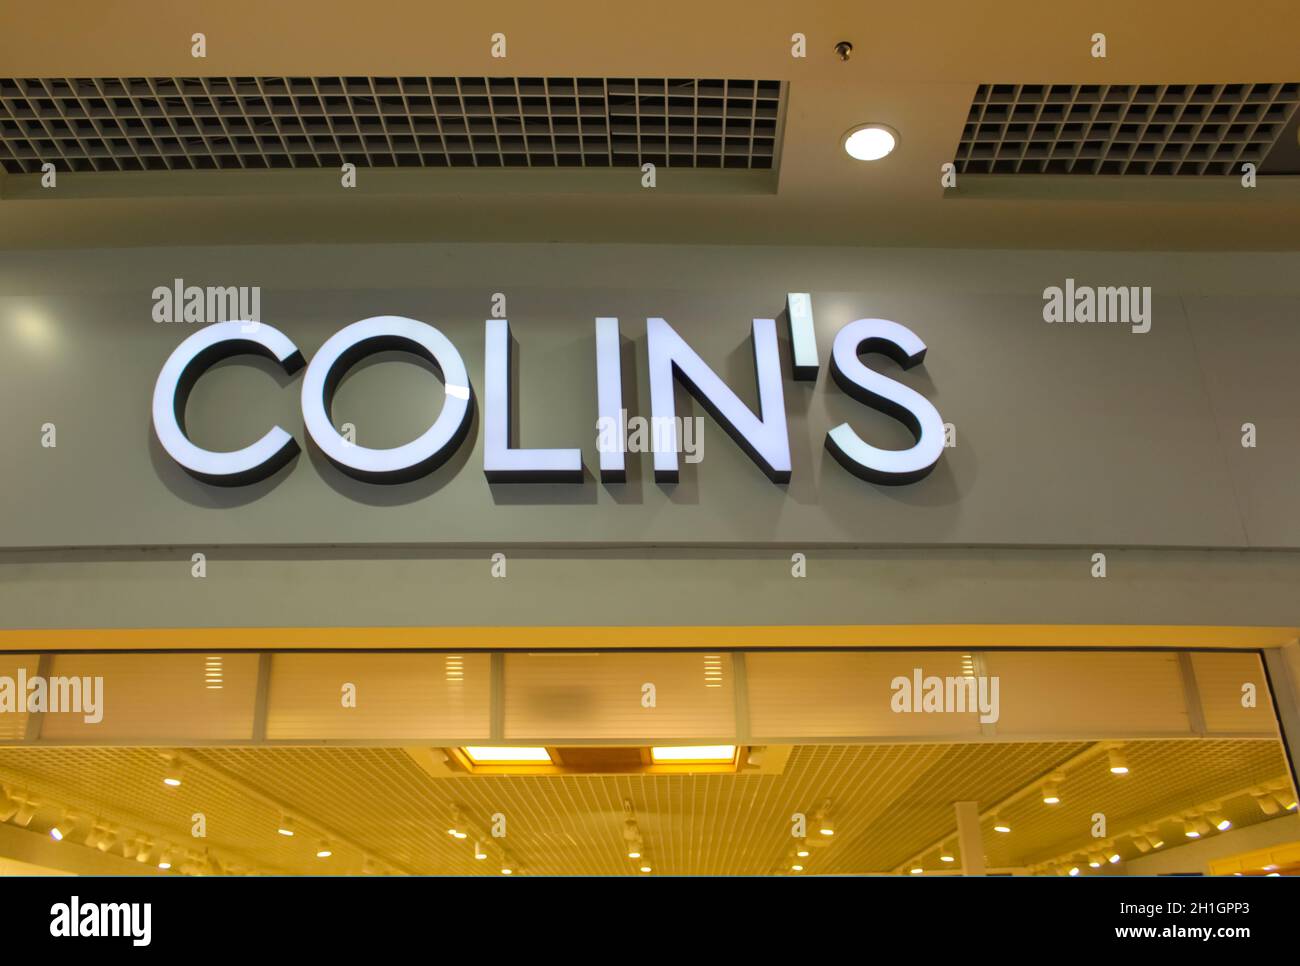 Kiyv, Ukraine - August 2, 2020: Colin's store in a shopping center in Kiyv, Ukraine on August 2, 2020 Stock Photo